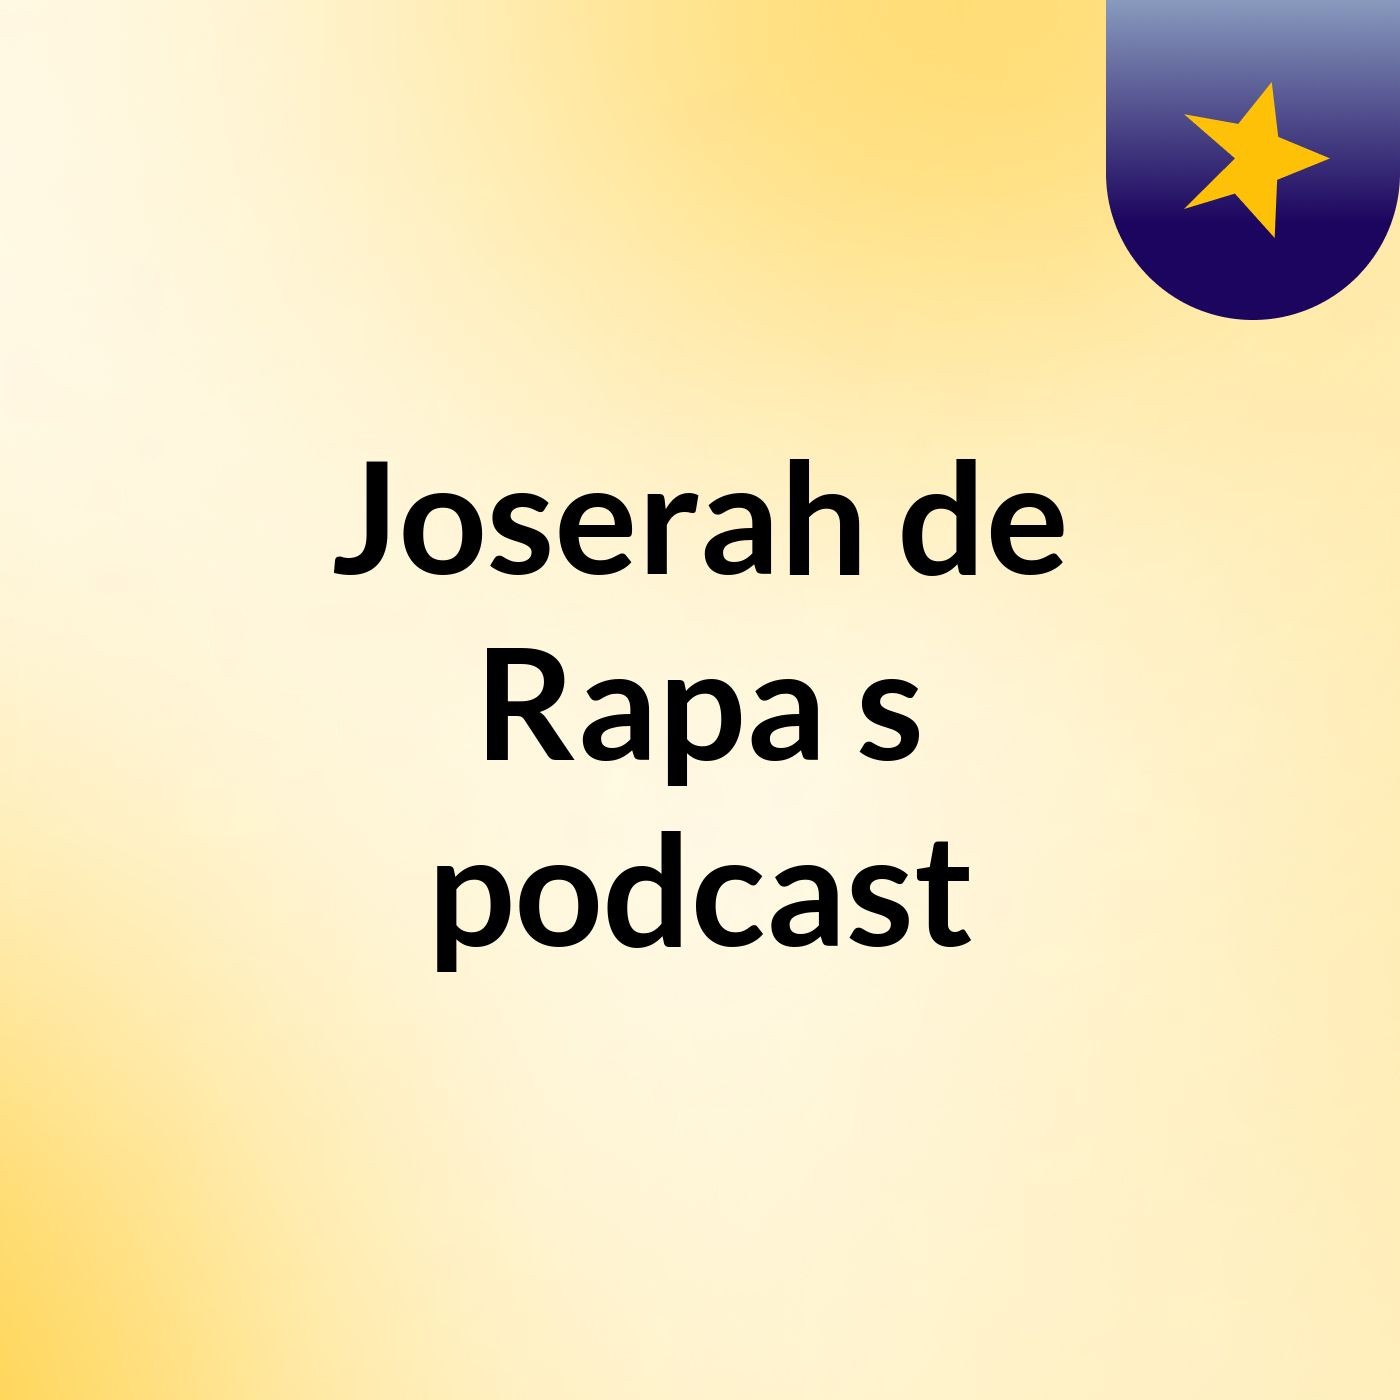 Joserah de Rapa's podcast